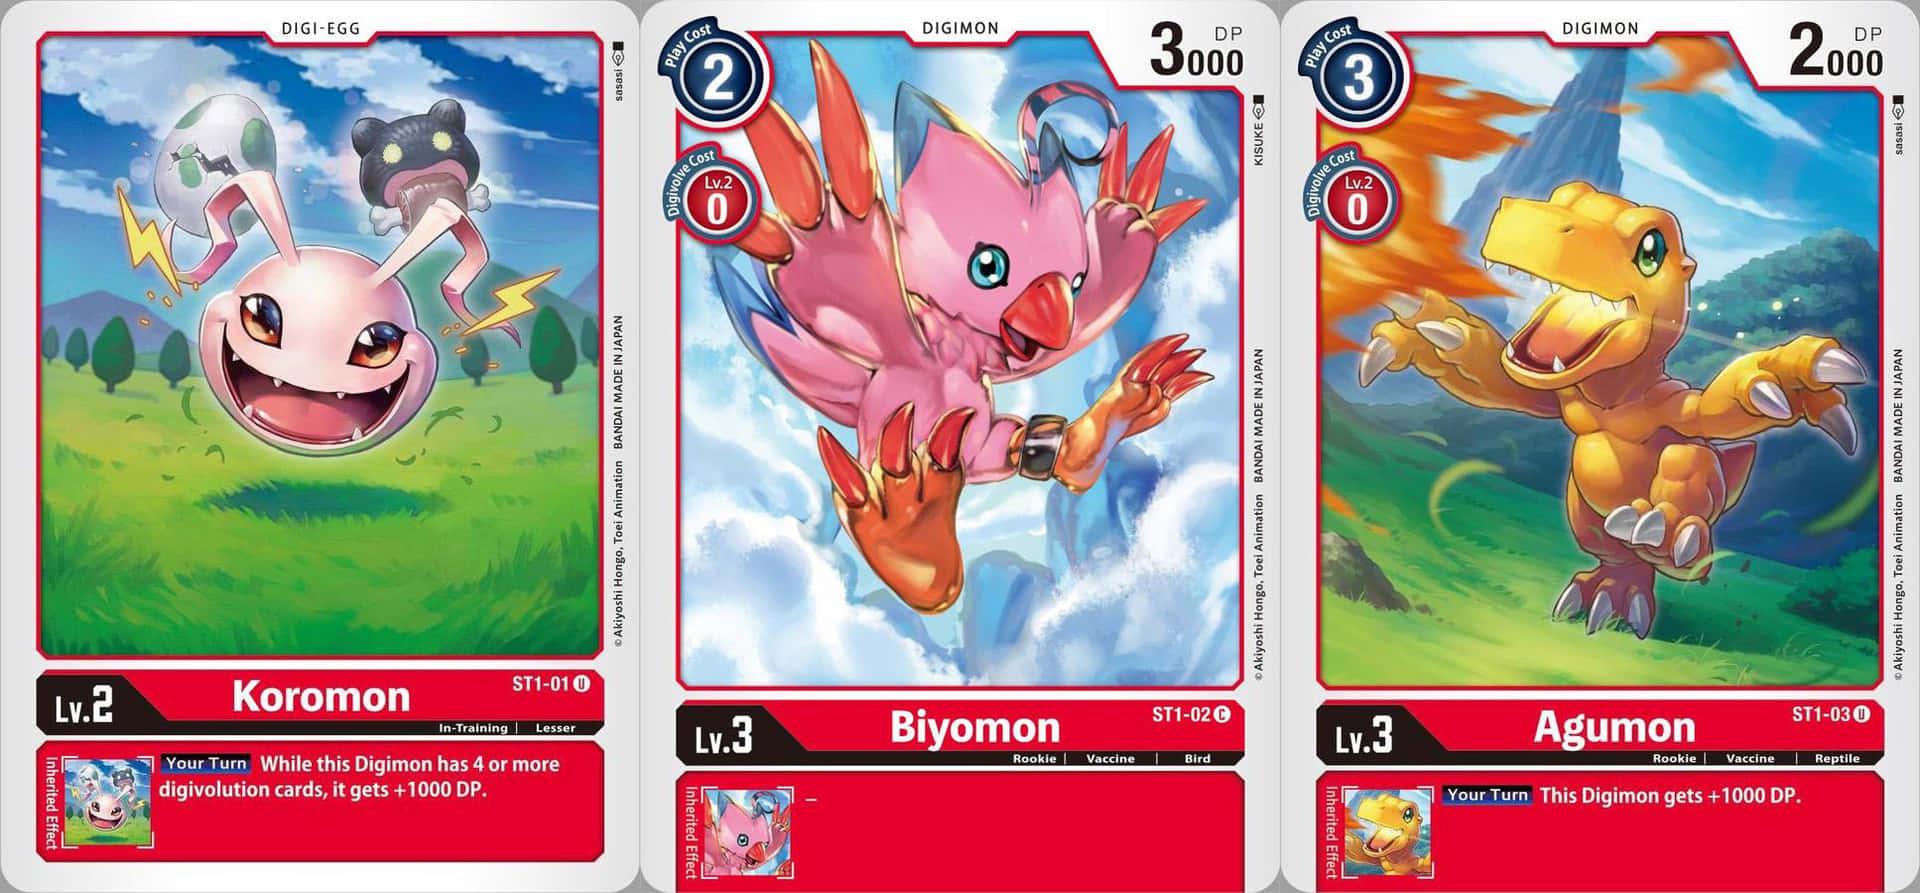 Biyomon, The Vivid Digimon Bird Wallpaper